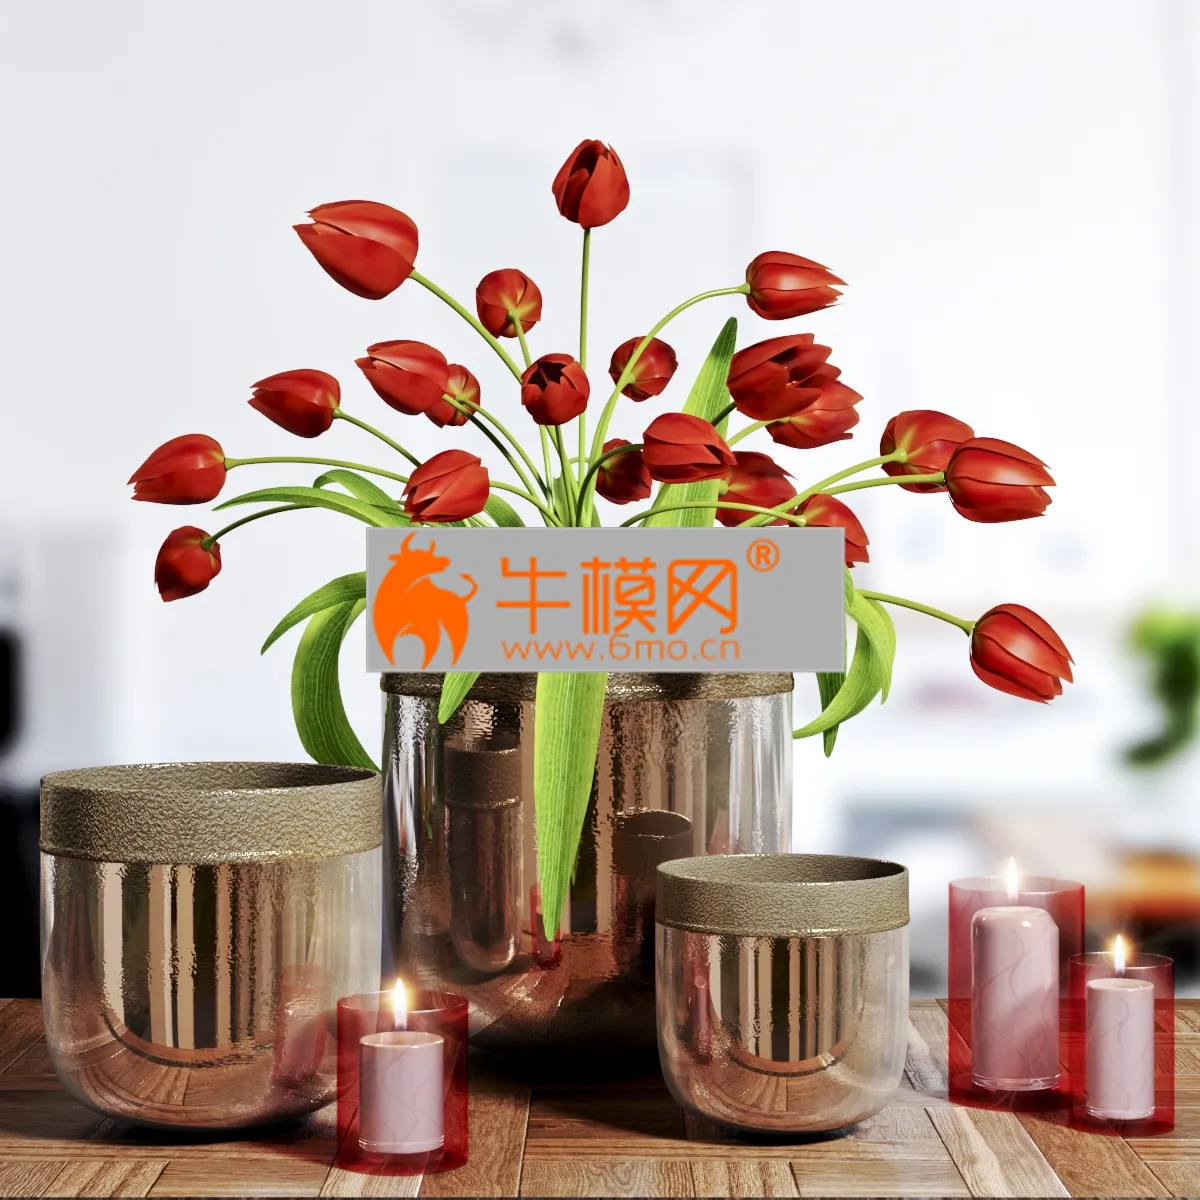 Flower Vase and candel – 4982